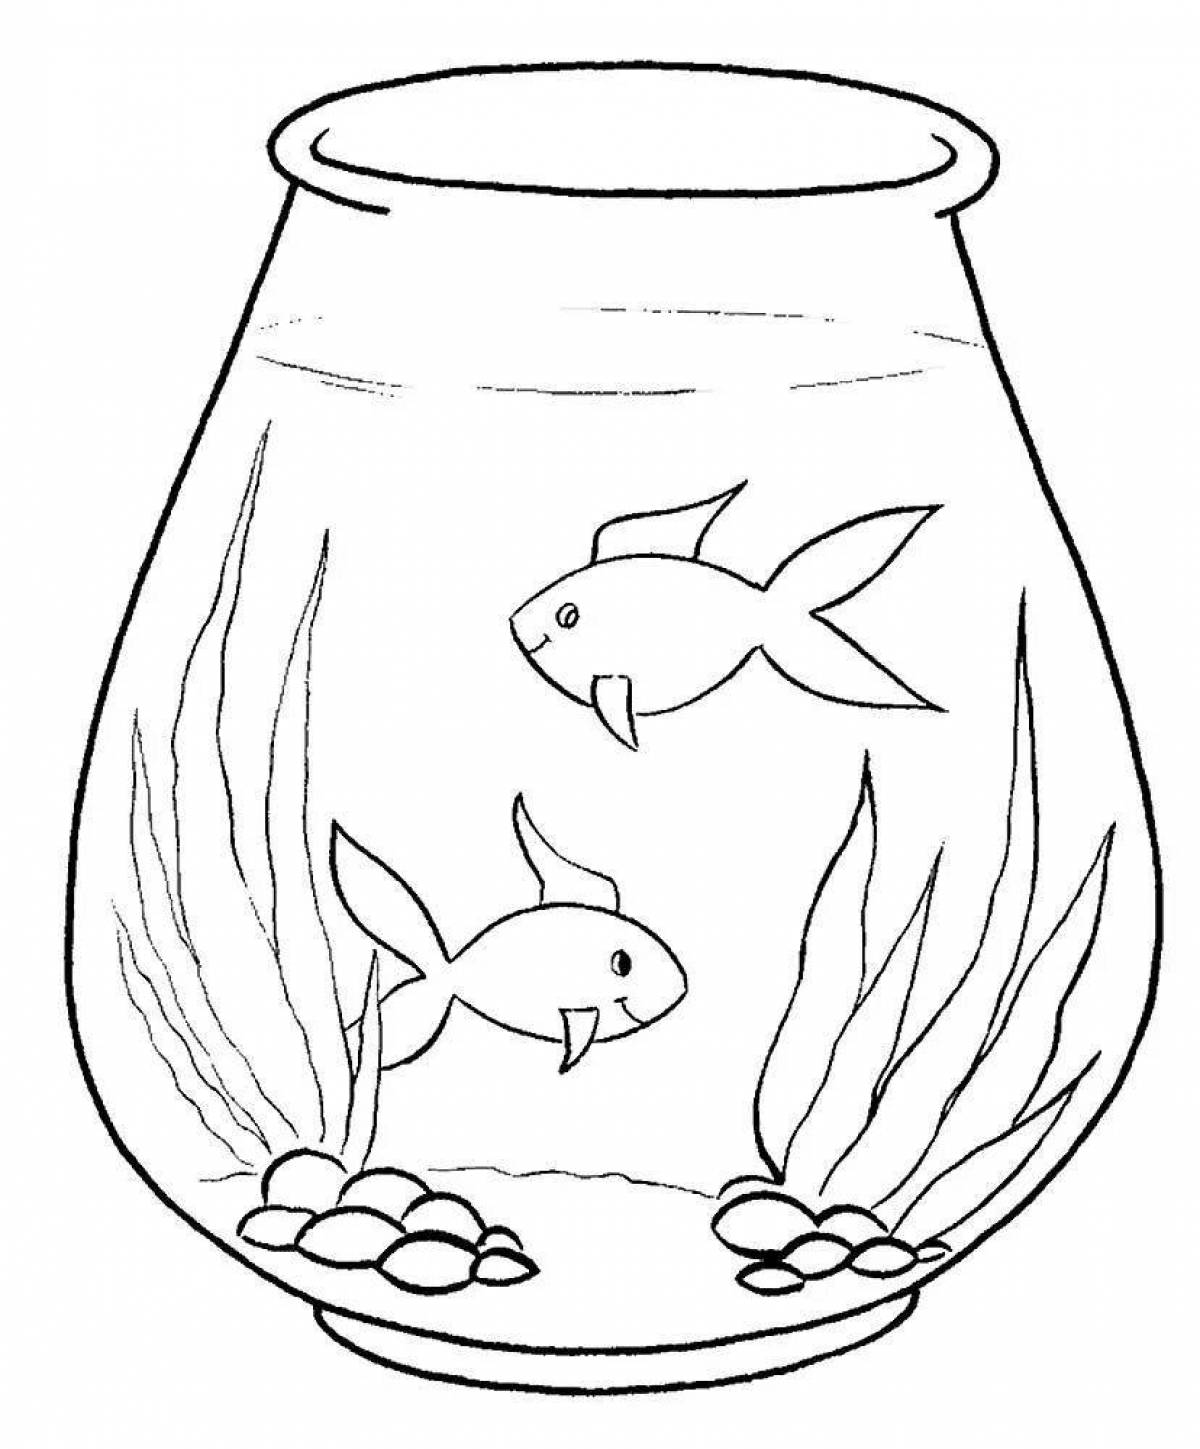 Раскраска водой картинка. Аквариум раскраска для детей. Раскраска аквариум с рыбками. Раскраска аквариум с рыбками для детей. Раскраска рыбы в аквариуме.